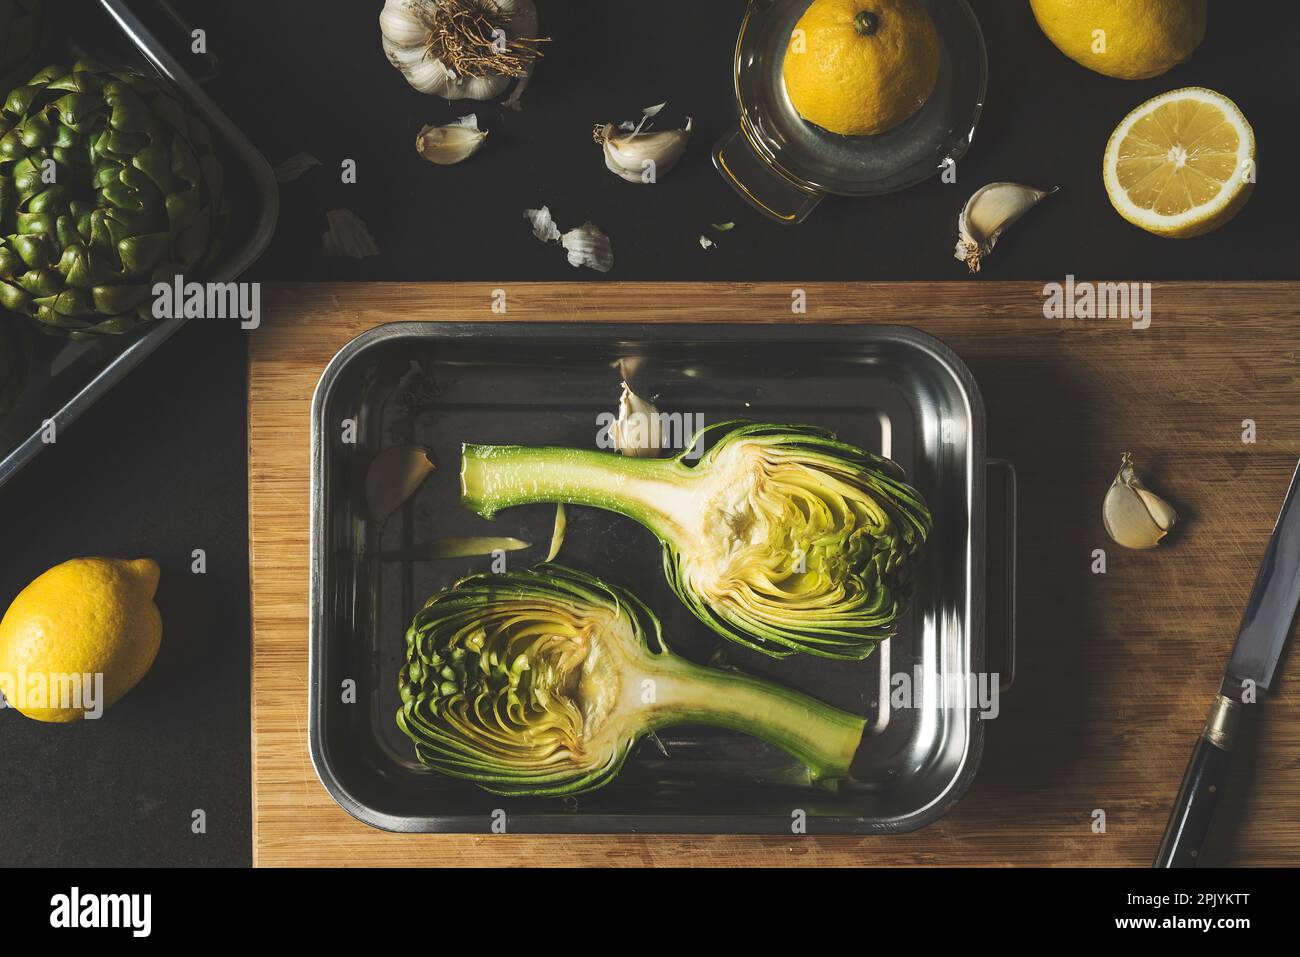 Fiore di carciofo tagliato a metà in una teglia da forno, preparazione degli alimenti per la cottura, ricetta per la cottura dei carciofi, shot vista dall'alto Foto Stock